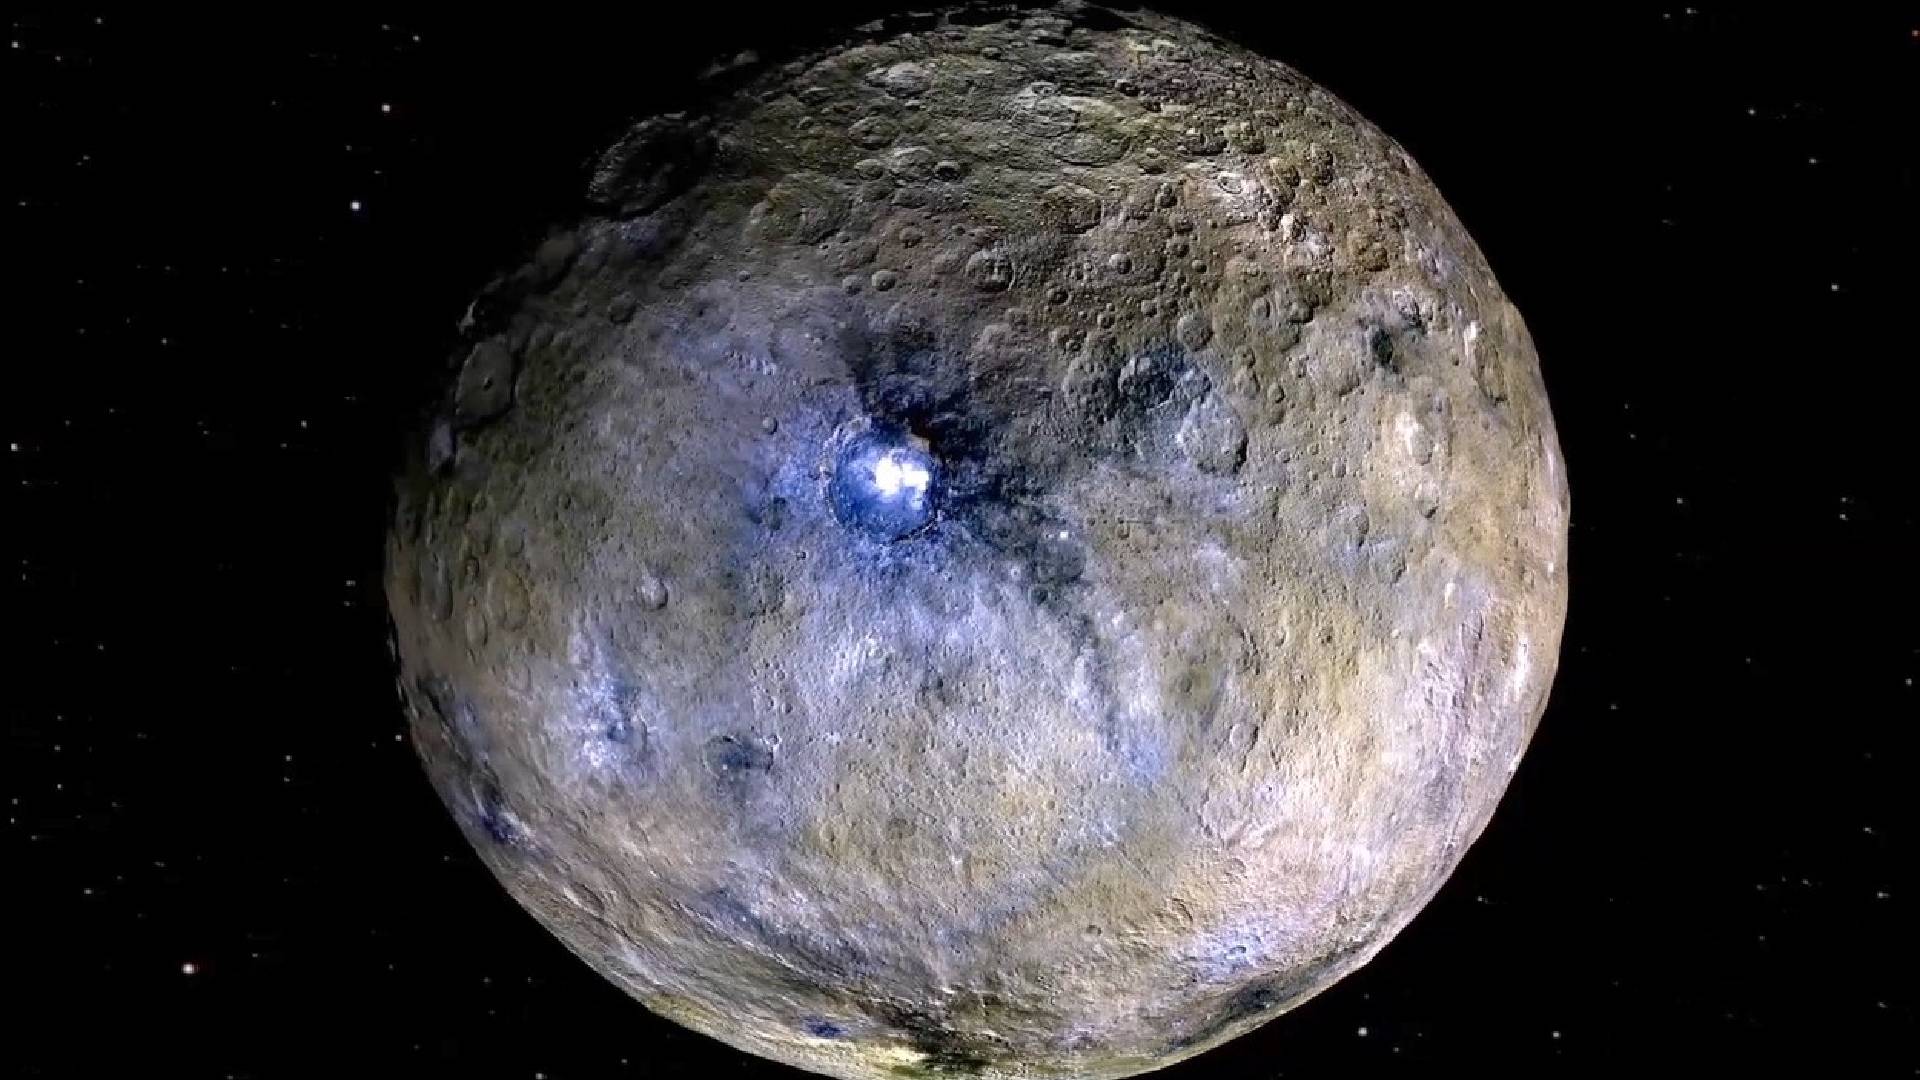 Sonda Dawn na povrchu trpasličí planety Ceres zachytila záhadné skvrny